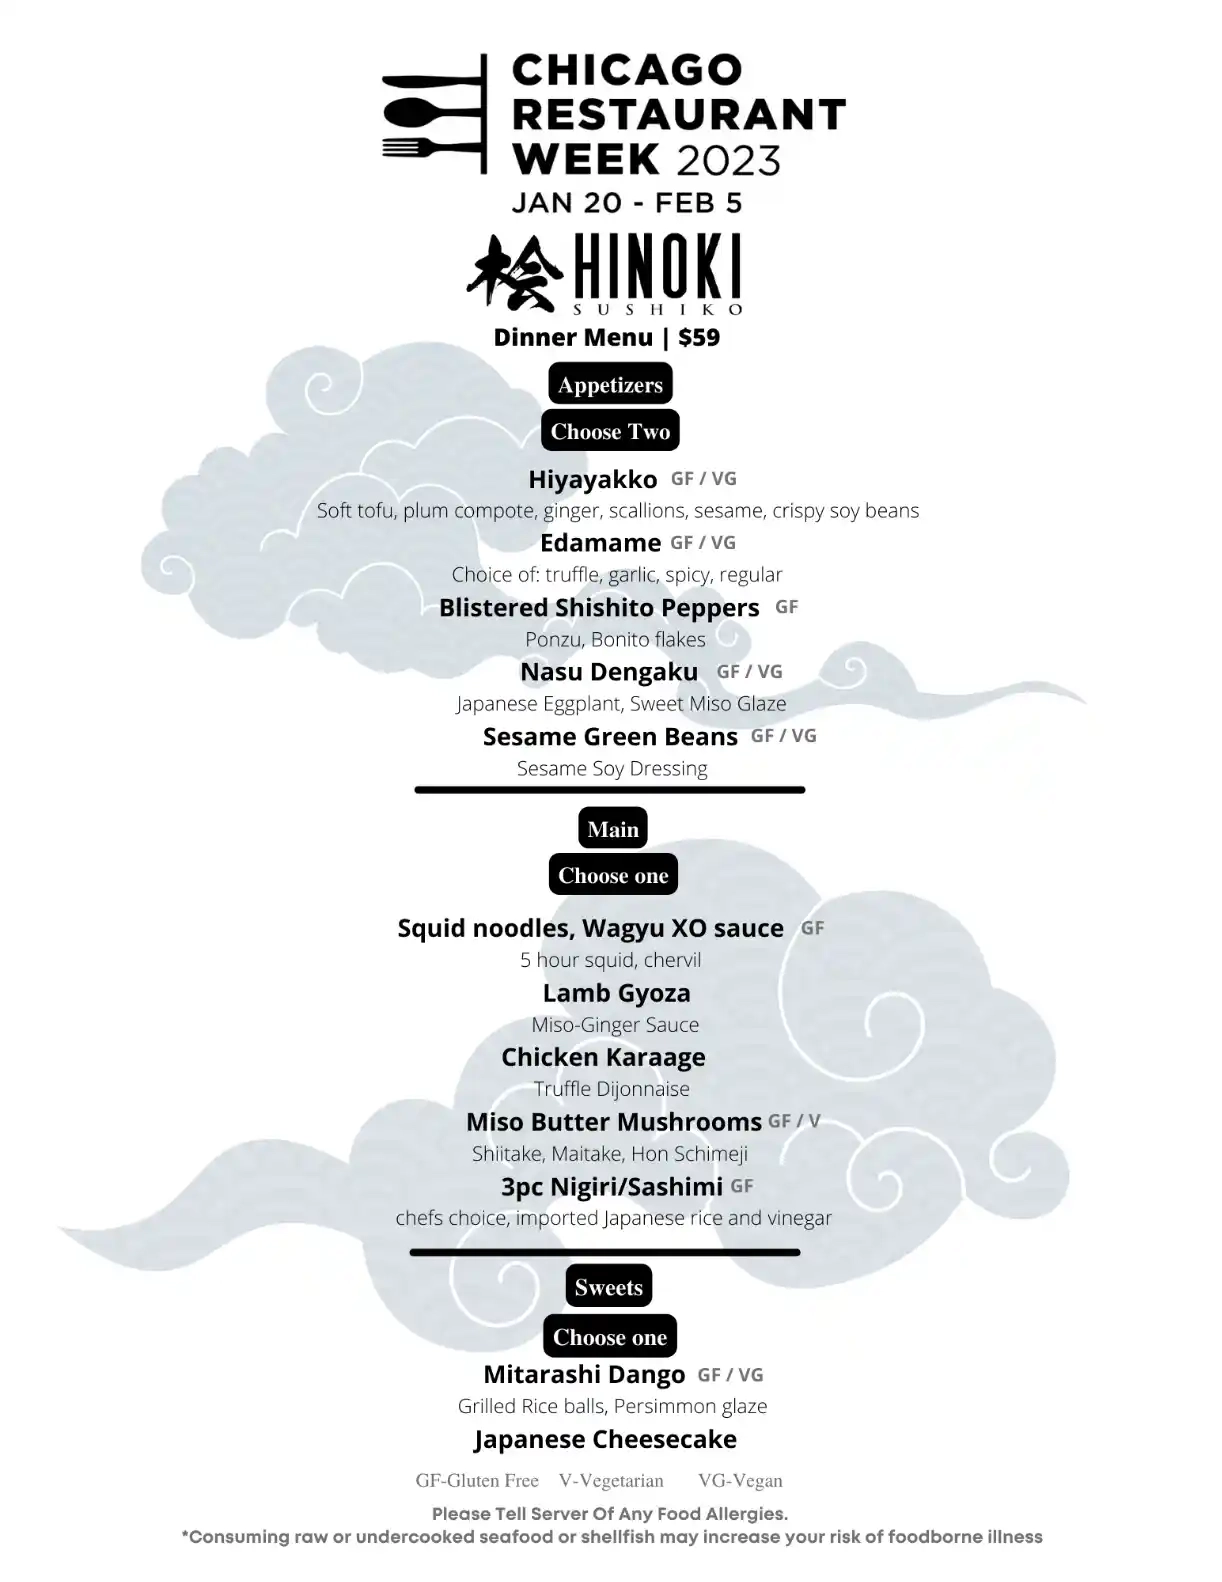 Chicago Restaurant Week 2023 Menu Hinoki Sushiko